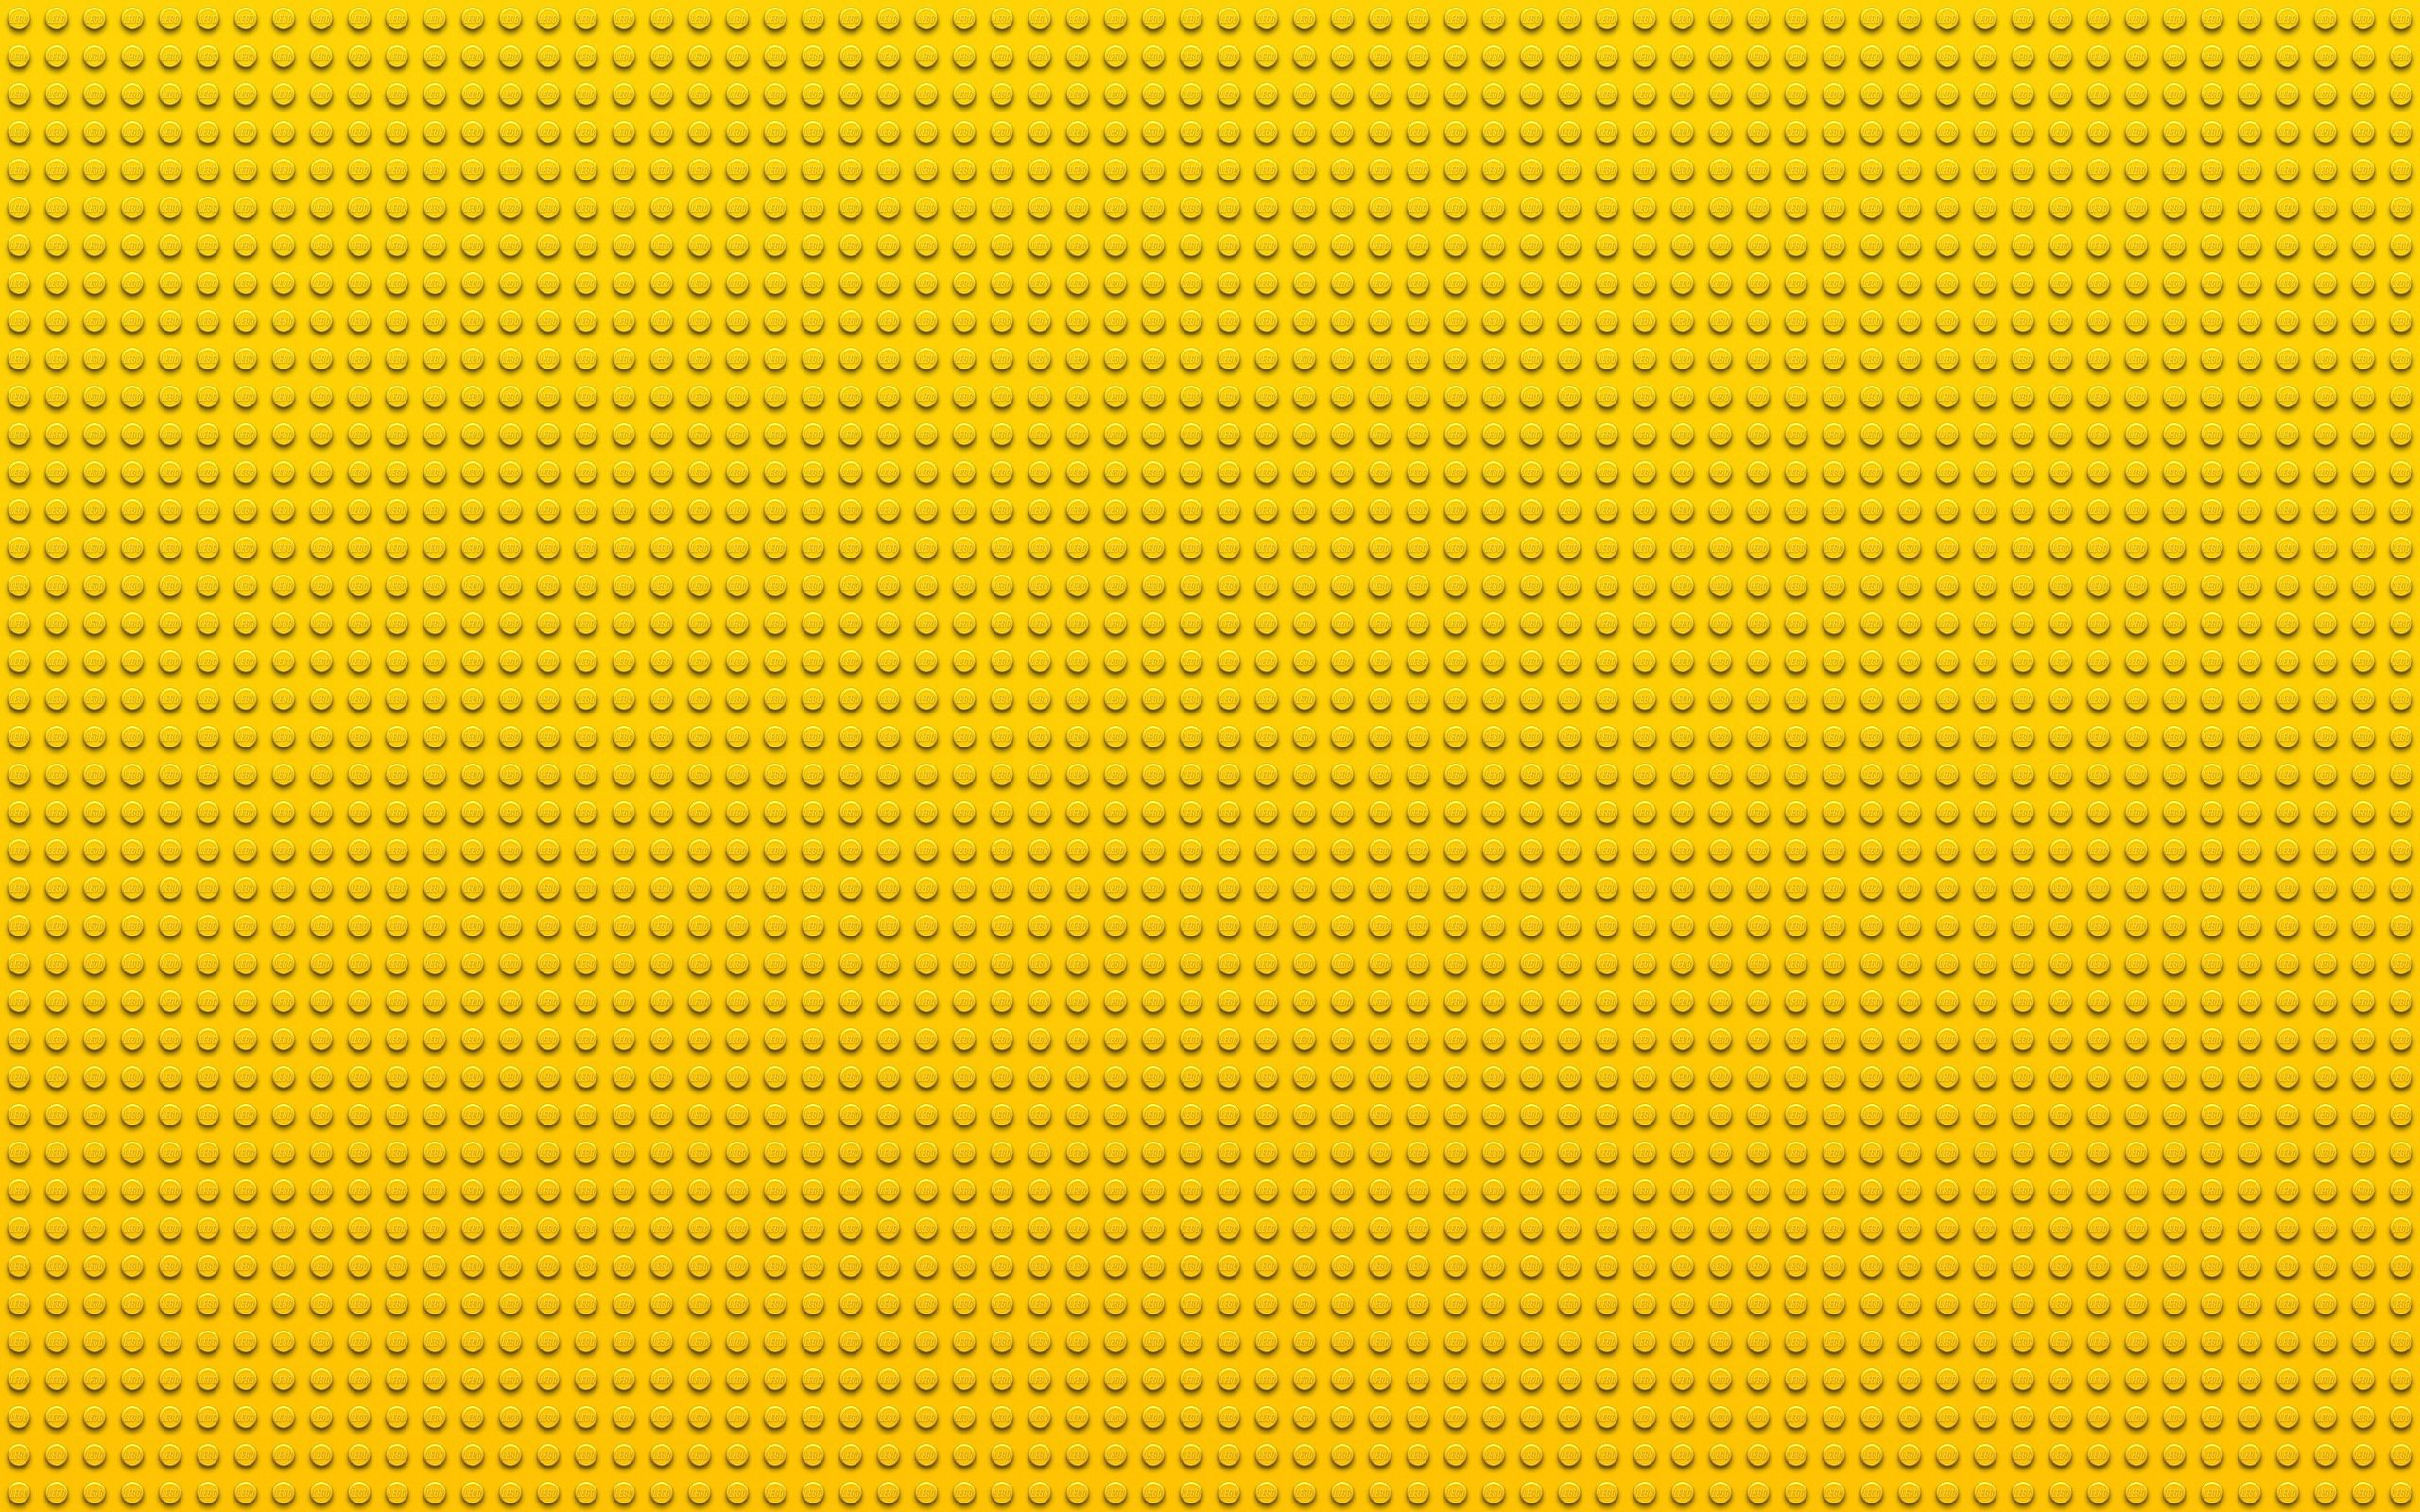 54230 Обои и Лего (Lego) картинки на рабочий стол. Скачать текстуры, точки, круги, желтый заставки на ПК бесплатно